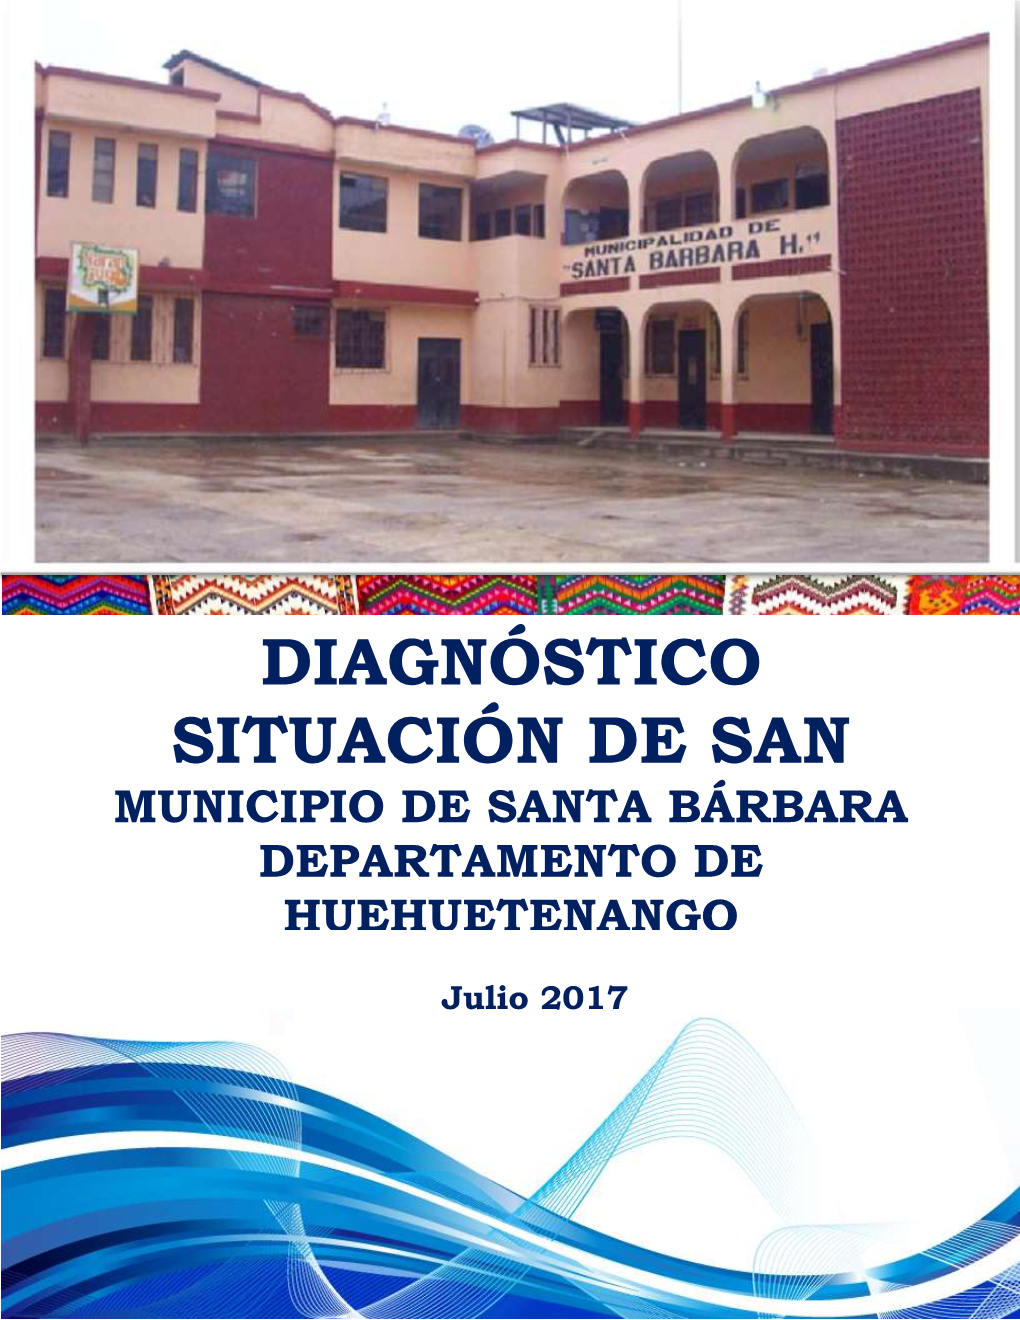 Diagnóstico Situación De San Municipio De Santa Bárbara Departamento De Huehuetenango